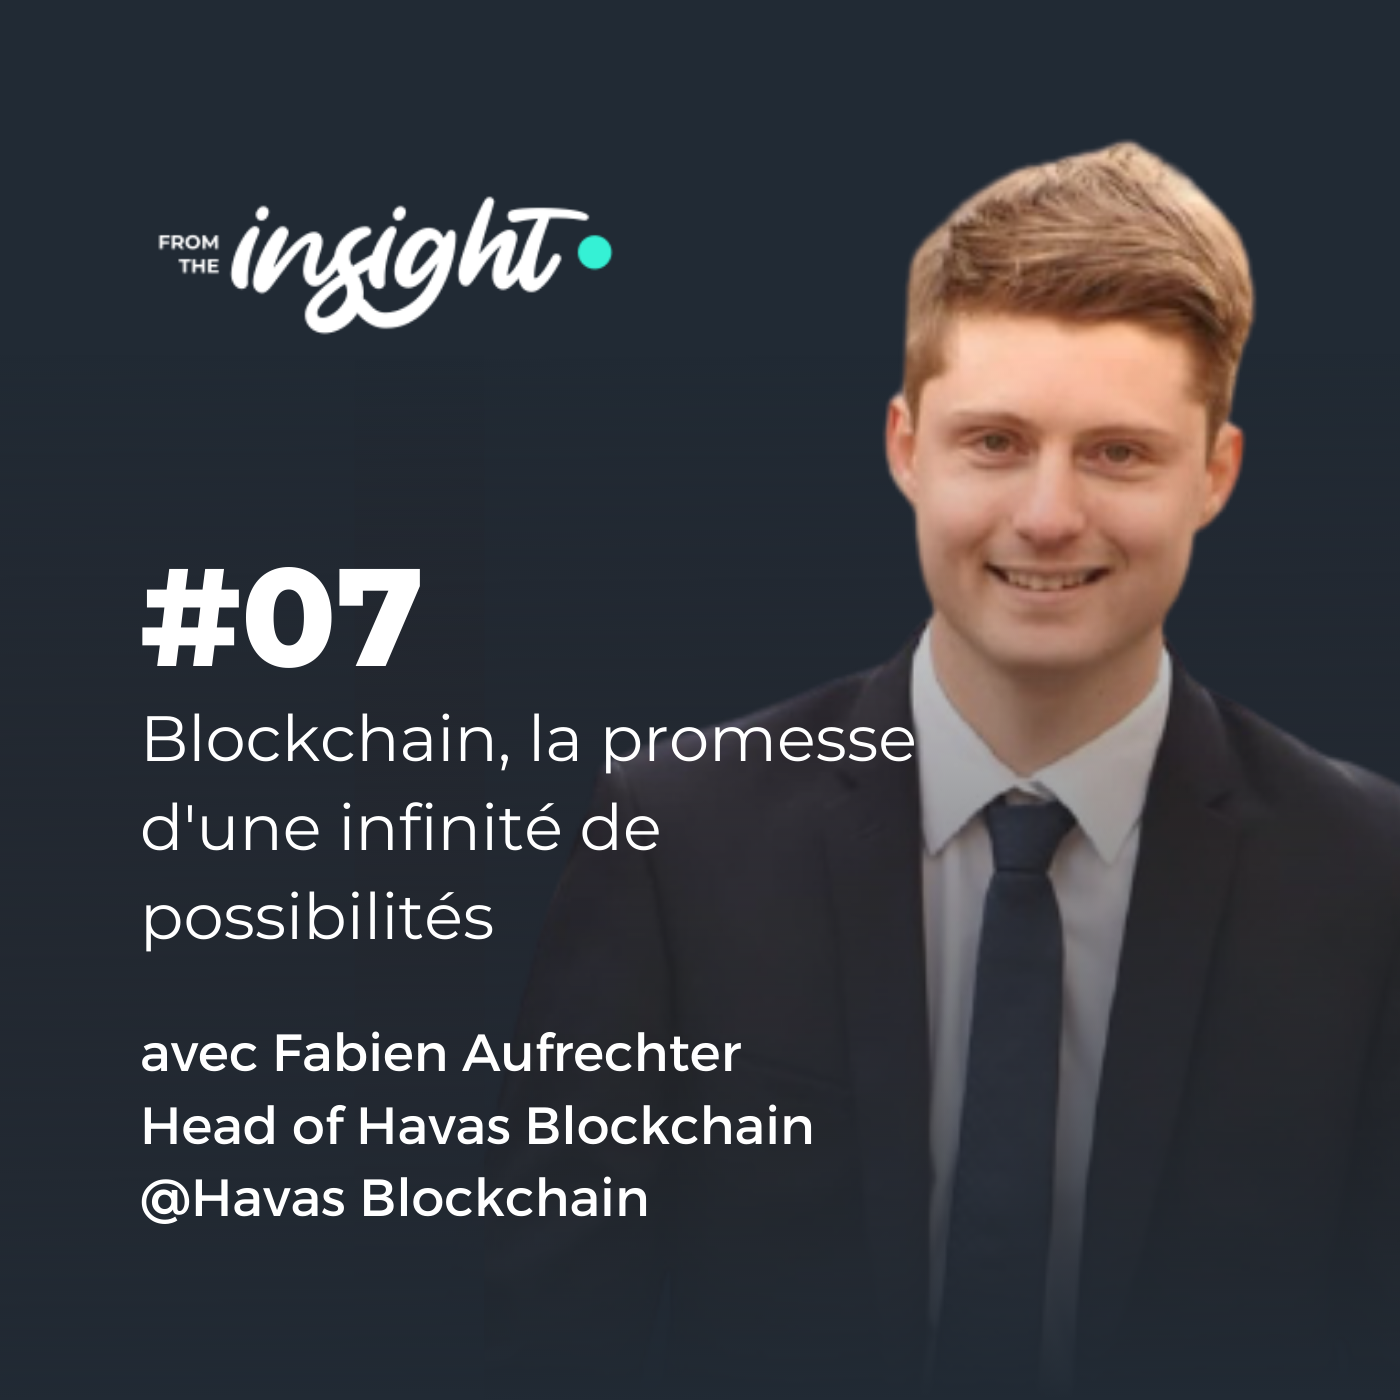 Fabien Aufrechter, Head of Havas Blockchain